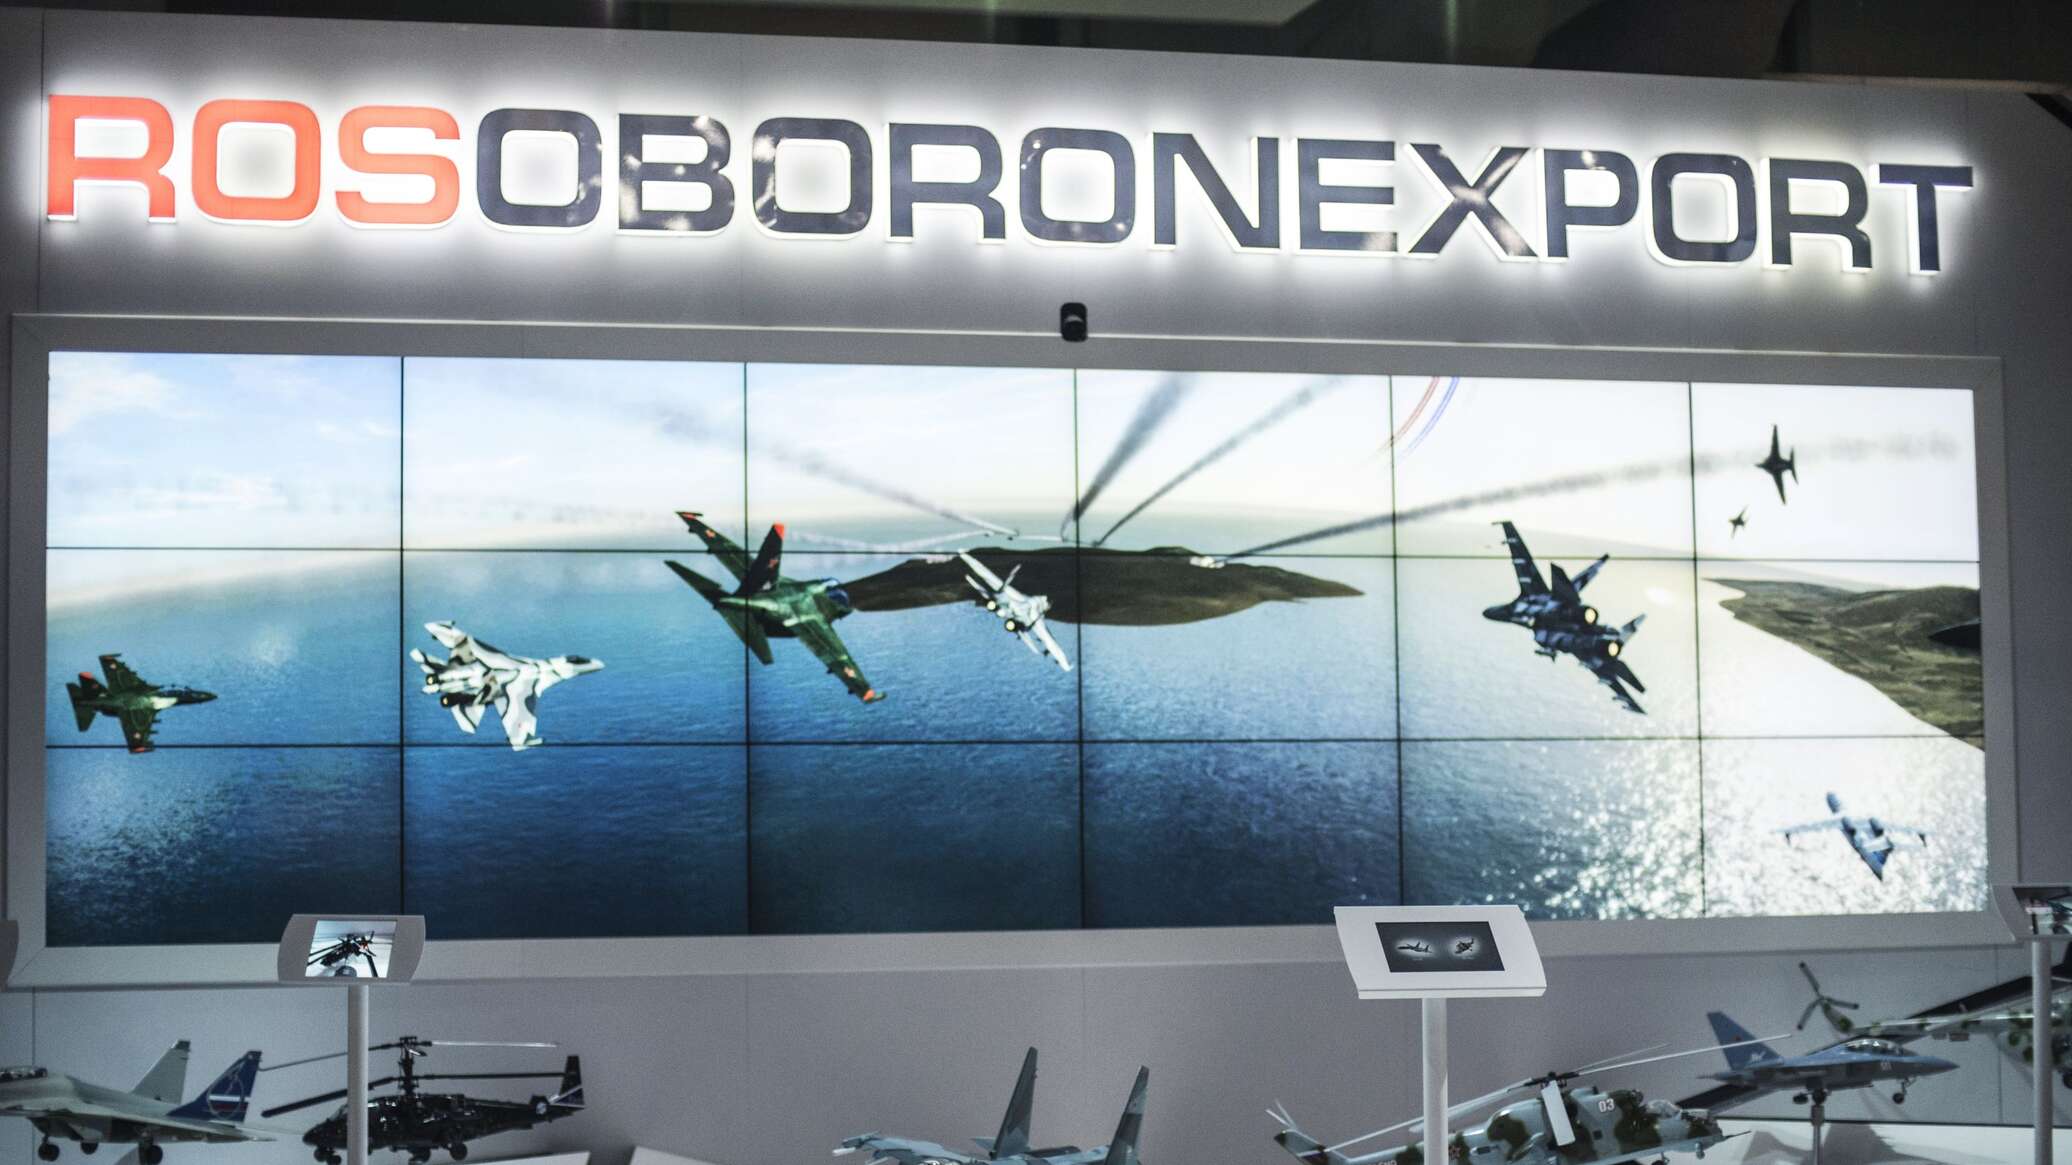 شركة "روس أوبورون إكسبورت" الروسية تعرض تعاونها في إنشاء وتجهيز قوات للإنزال الجوي لشركائها